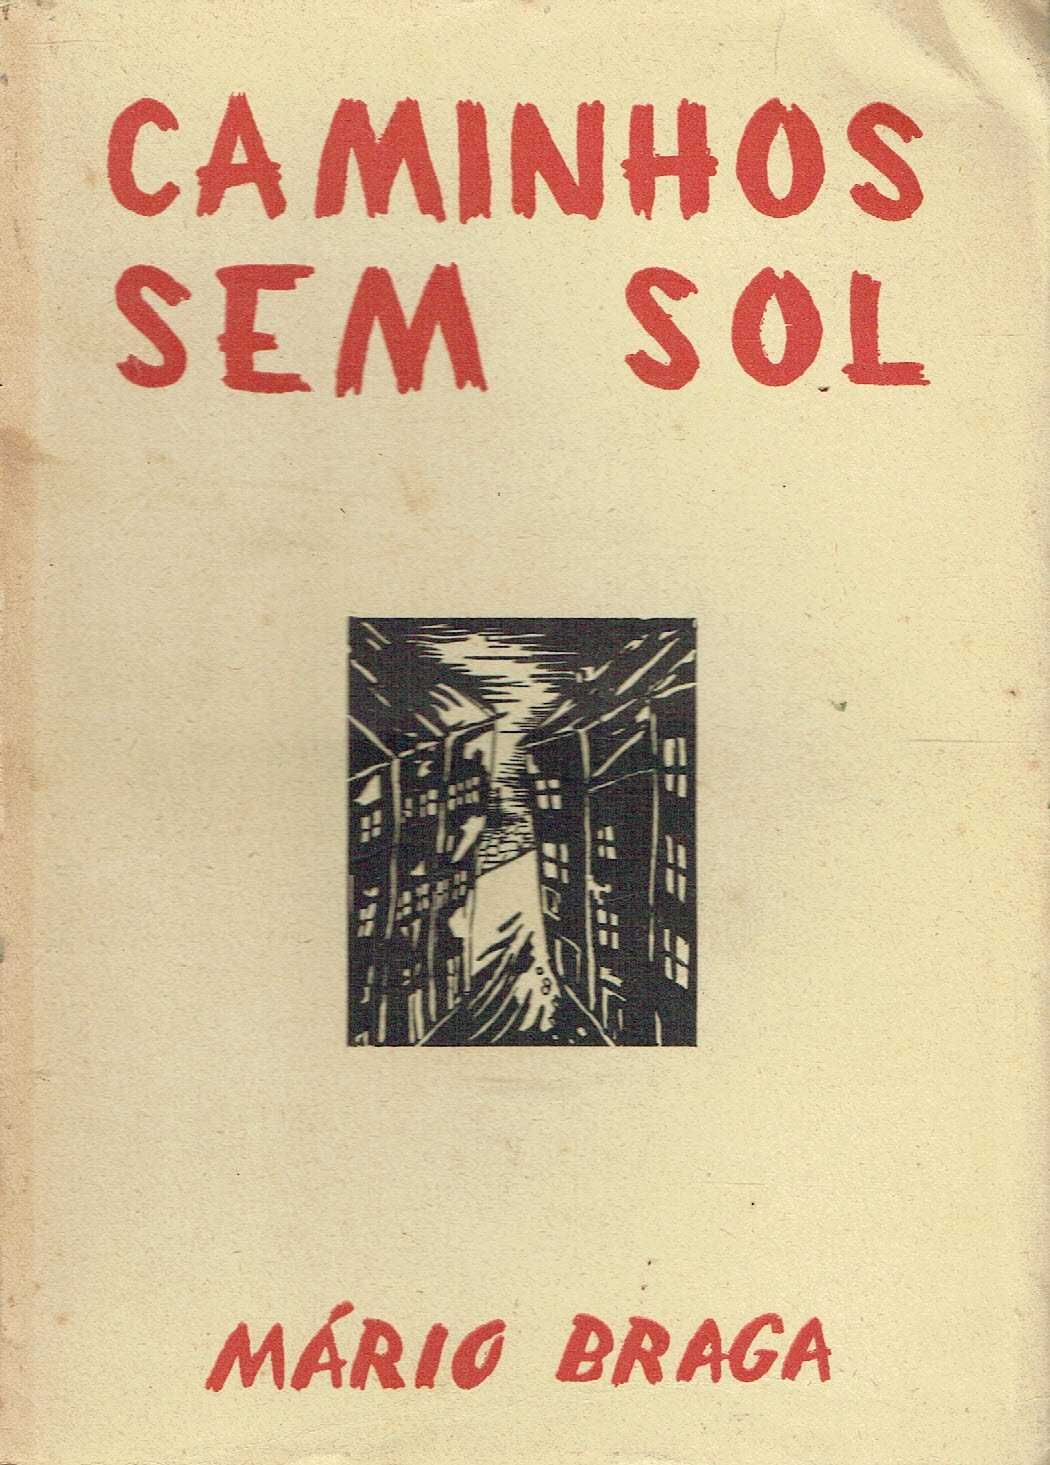 4718
	
Caminhos sem sol : novelas 
de Mário Braga.